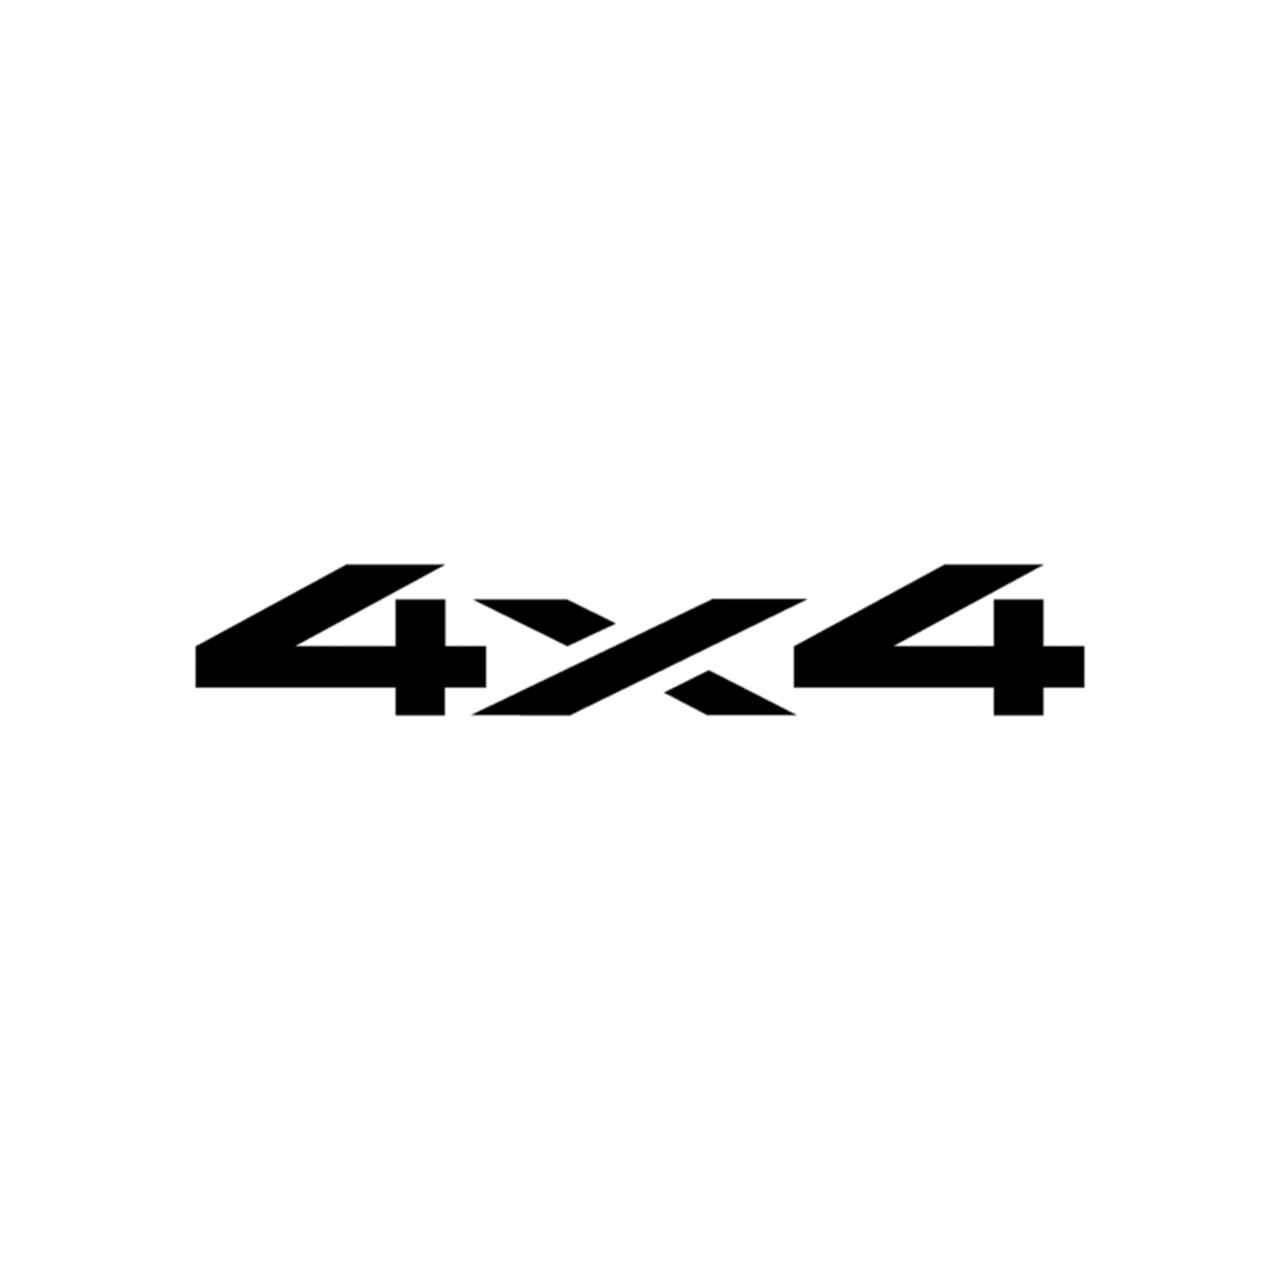 4x4 Logo - Logo Set 27 Vinyl Decal